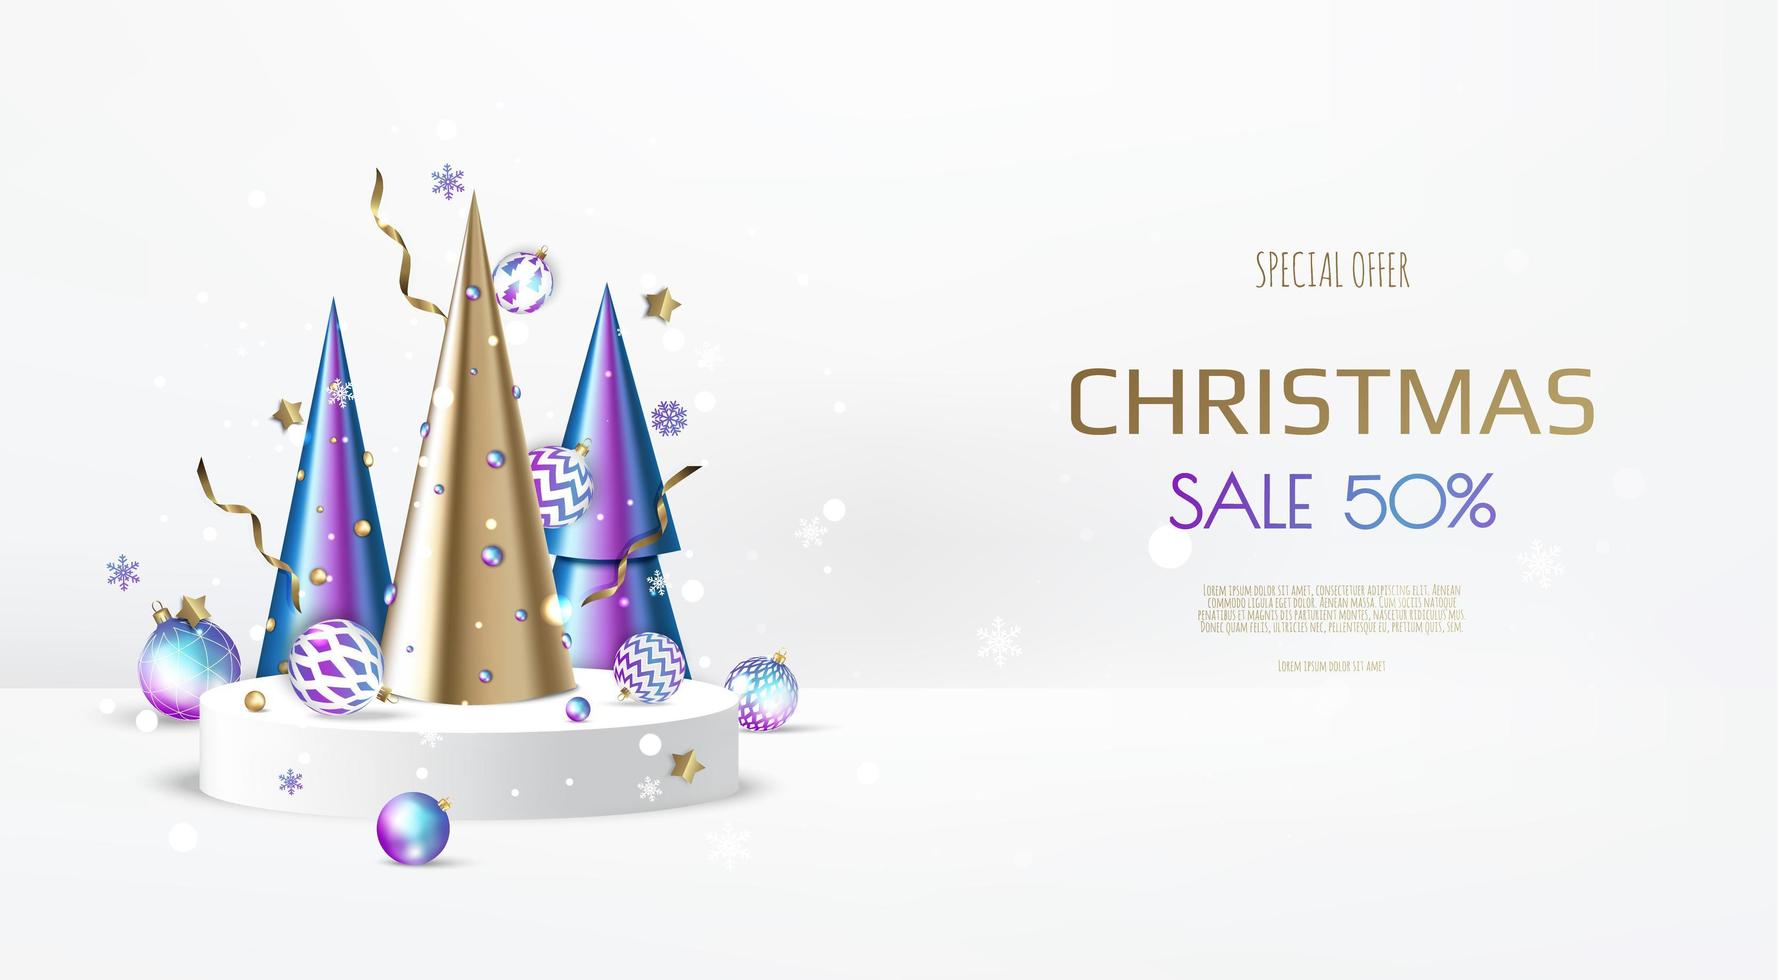 Frohe Weihnachten-Verkauf-Banner-Vorlage. Grußkarte, Banner, Poster, Header für Website vektor